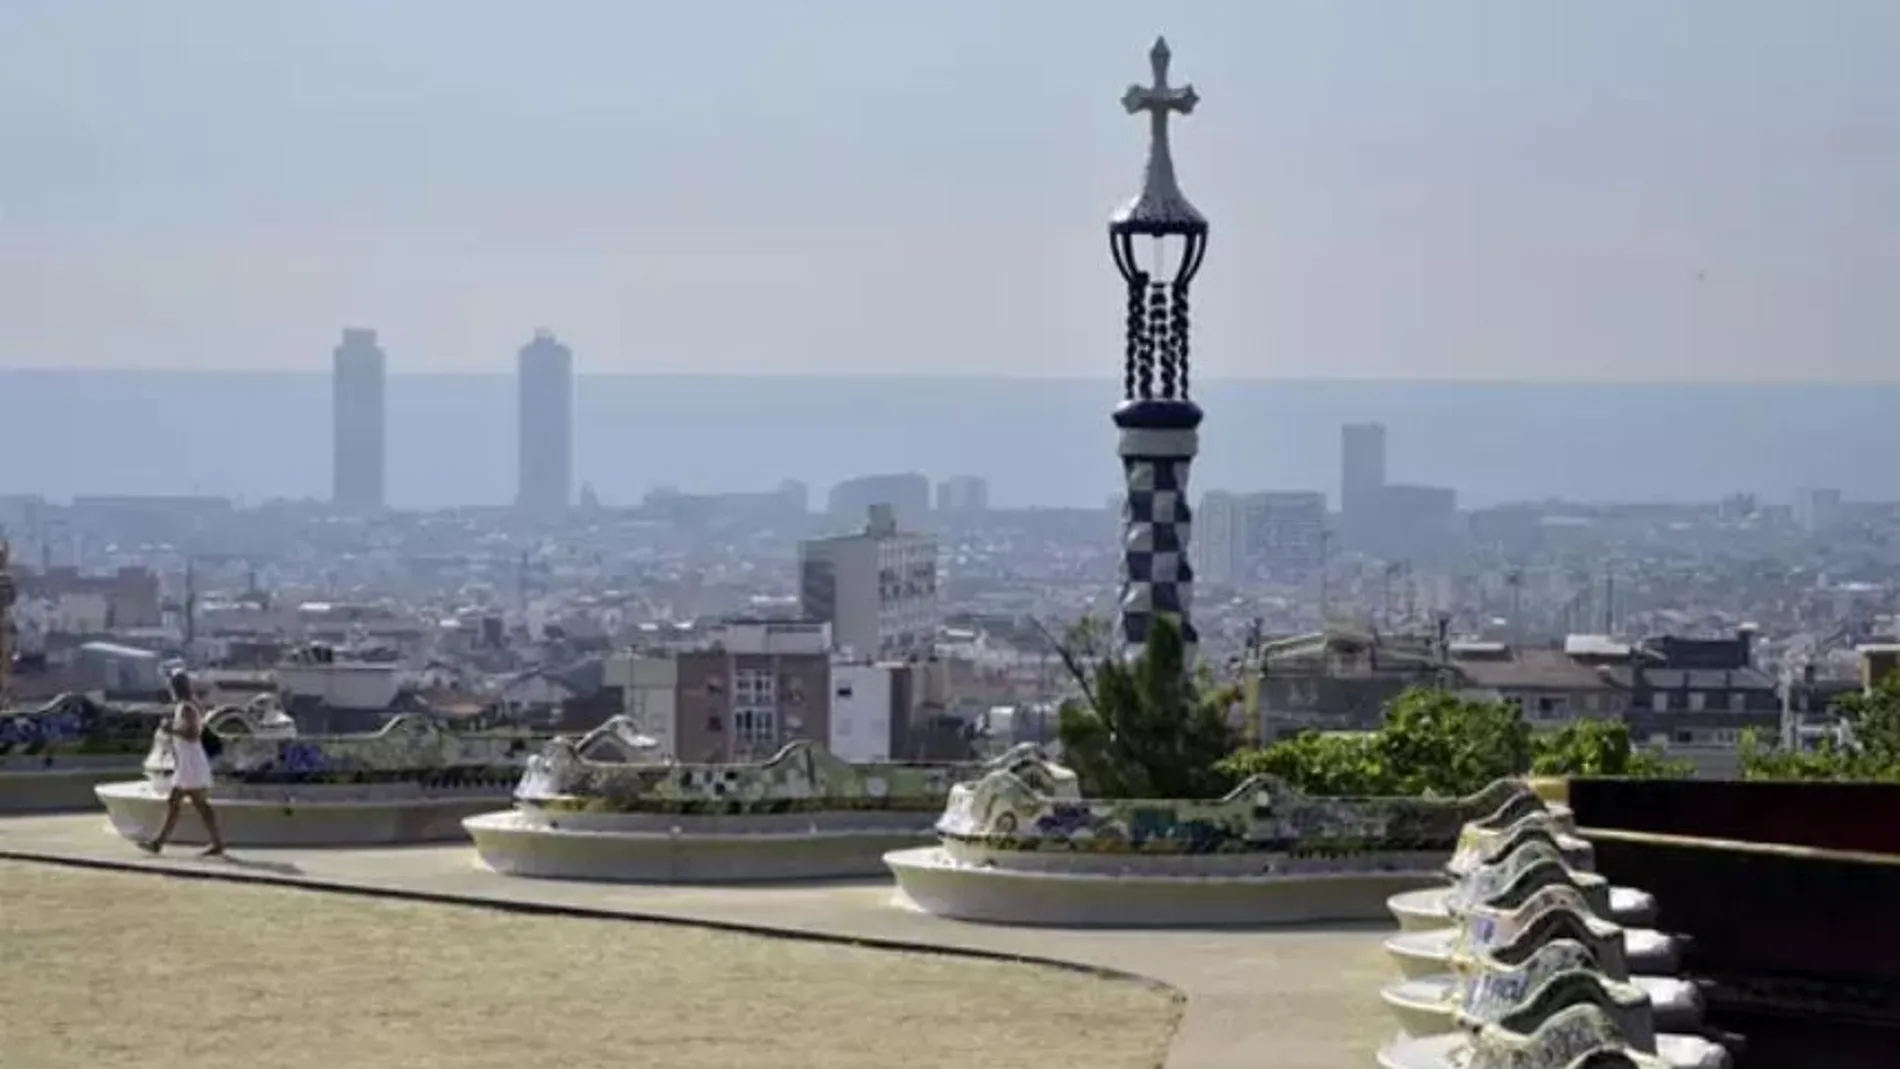 Vista del skyline de Barcelona desde el Park Güell en Barcelona